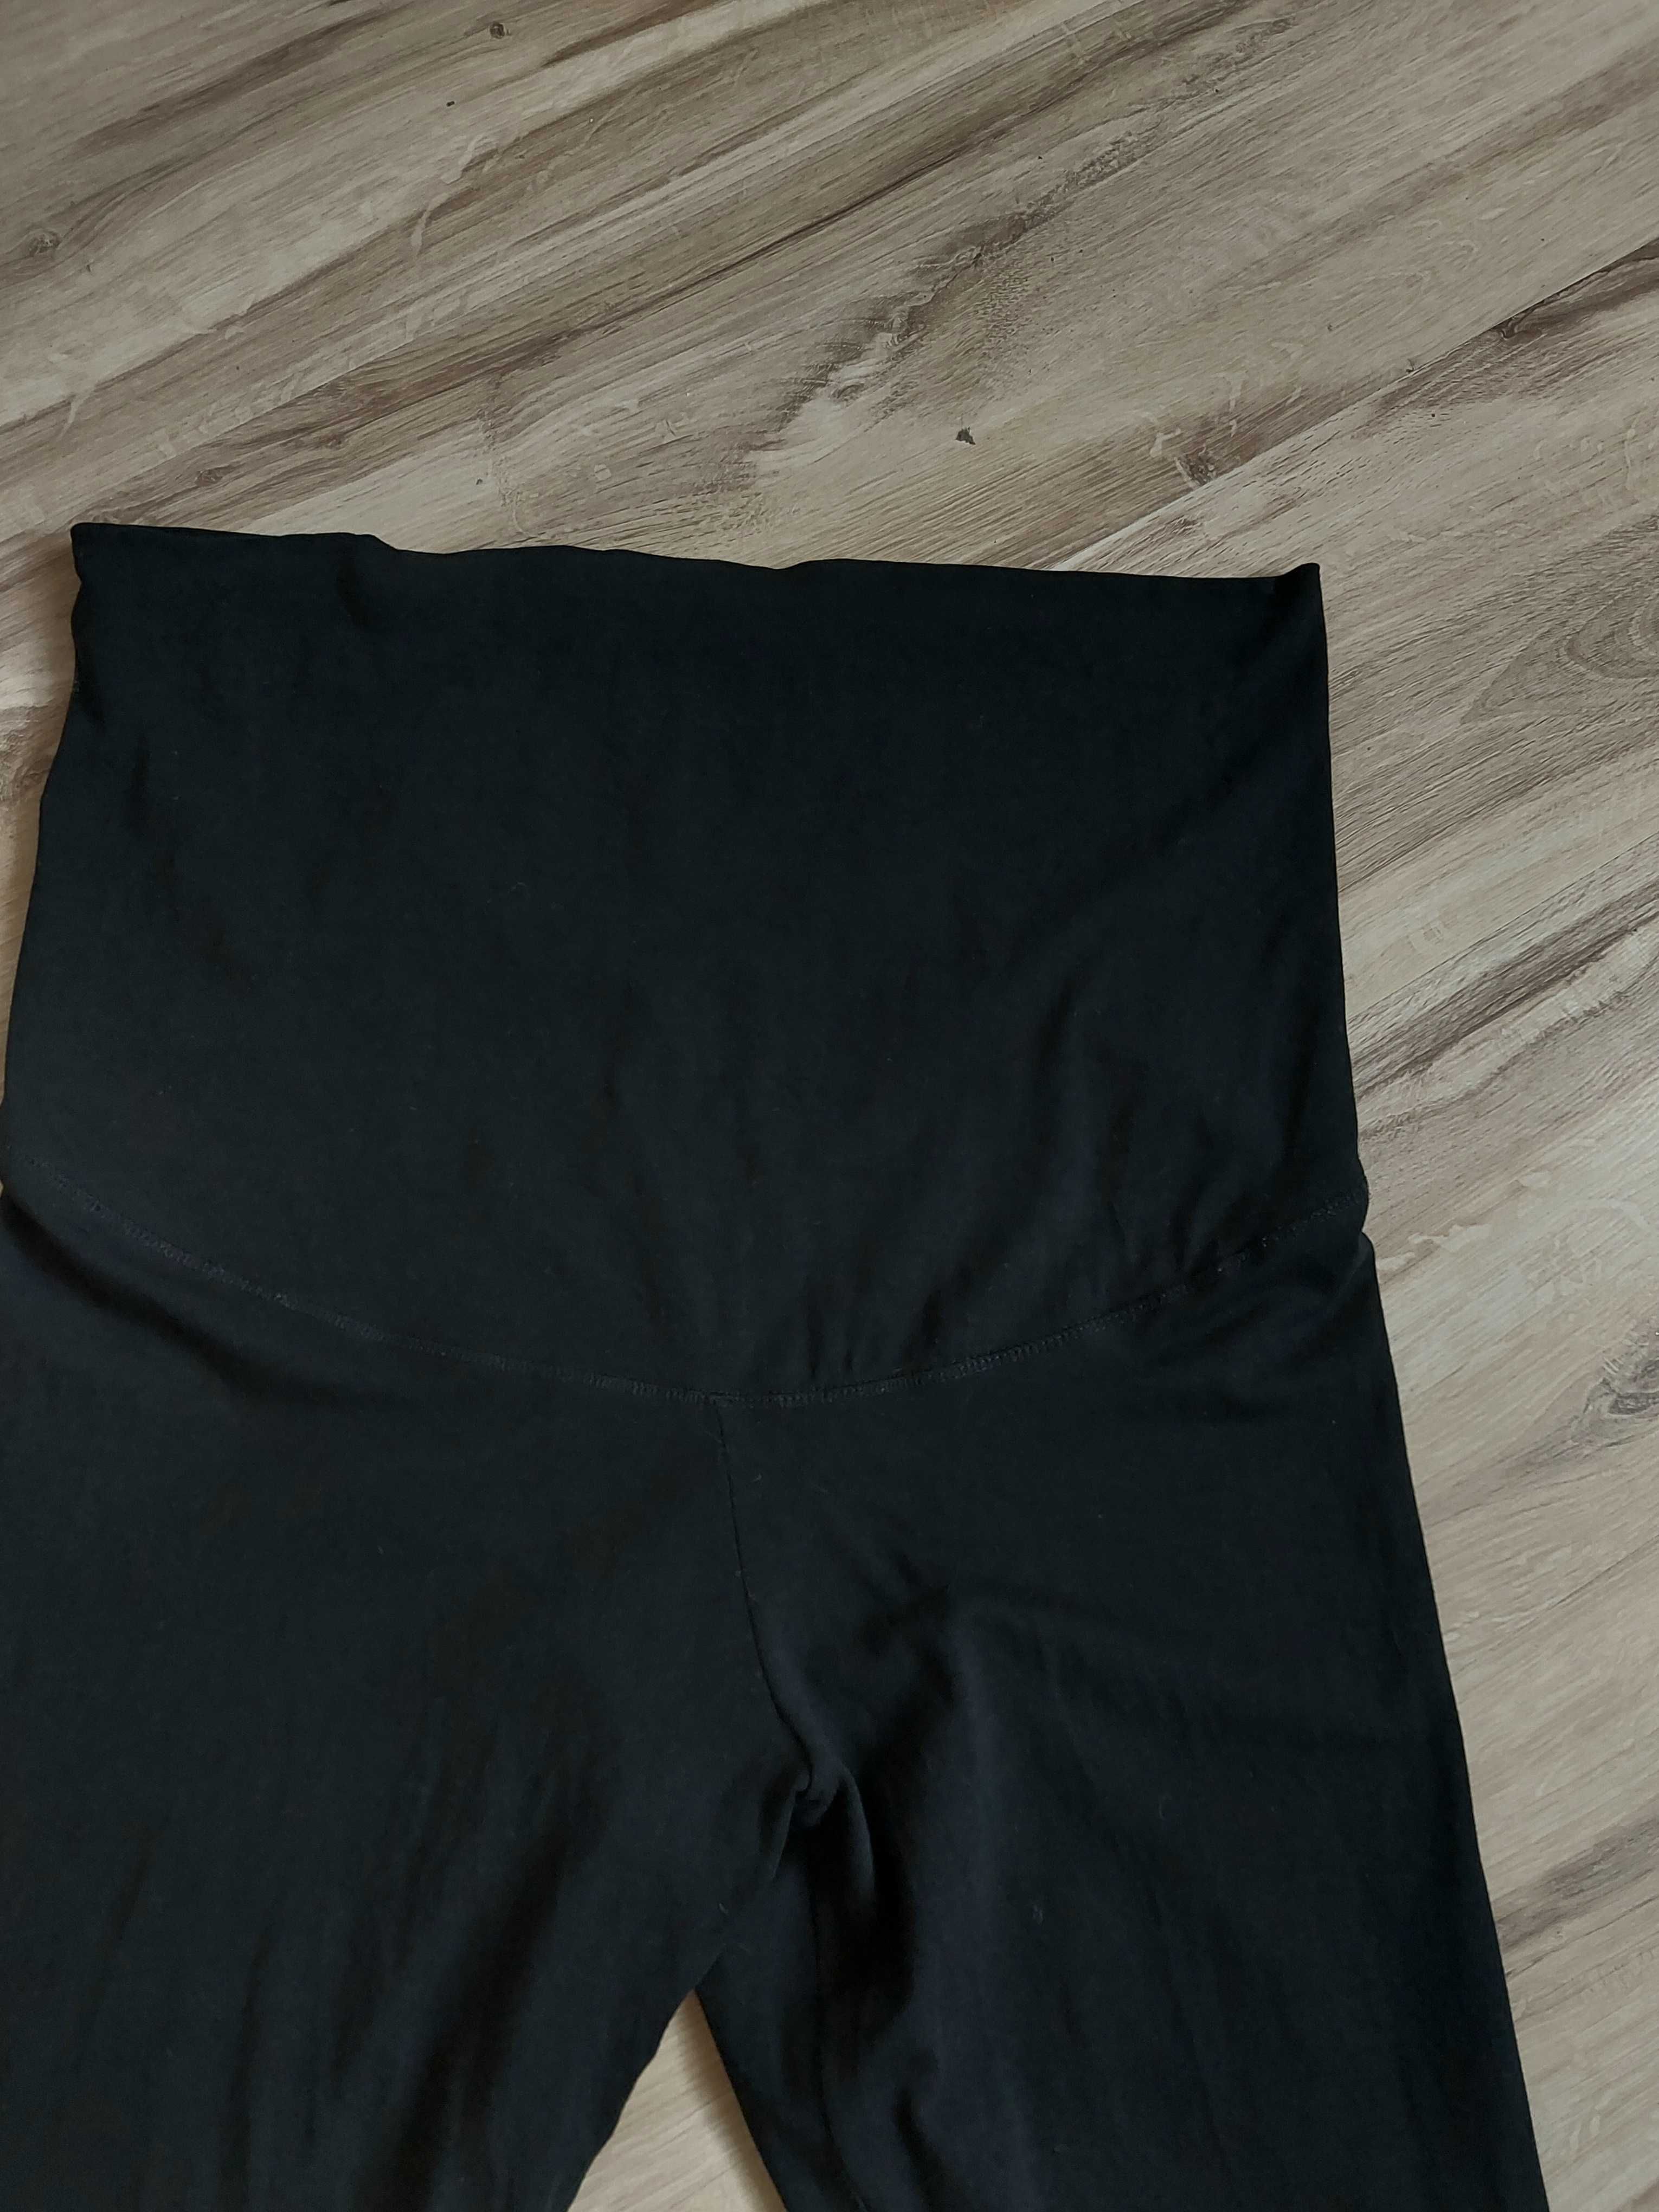 Czarne legginsy ciążowe XL h&m mama 42 spodnie